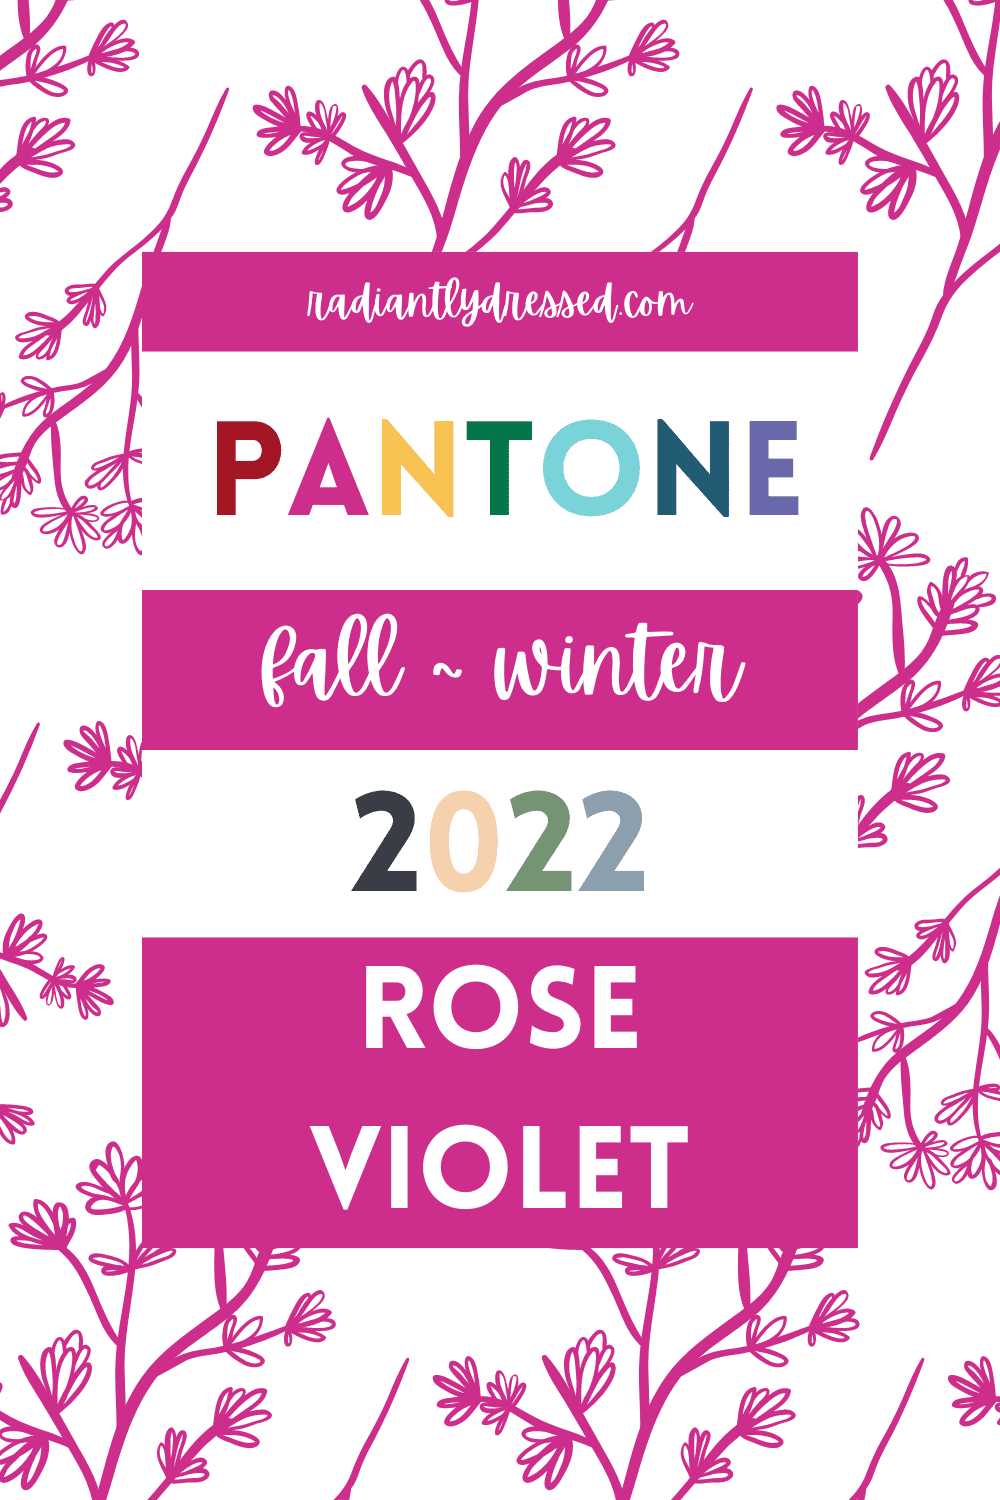 Pantone Rose Violet Pin